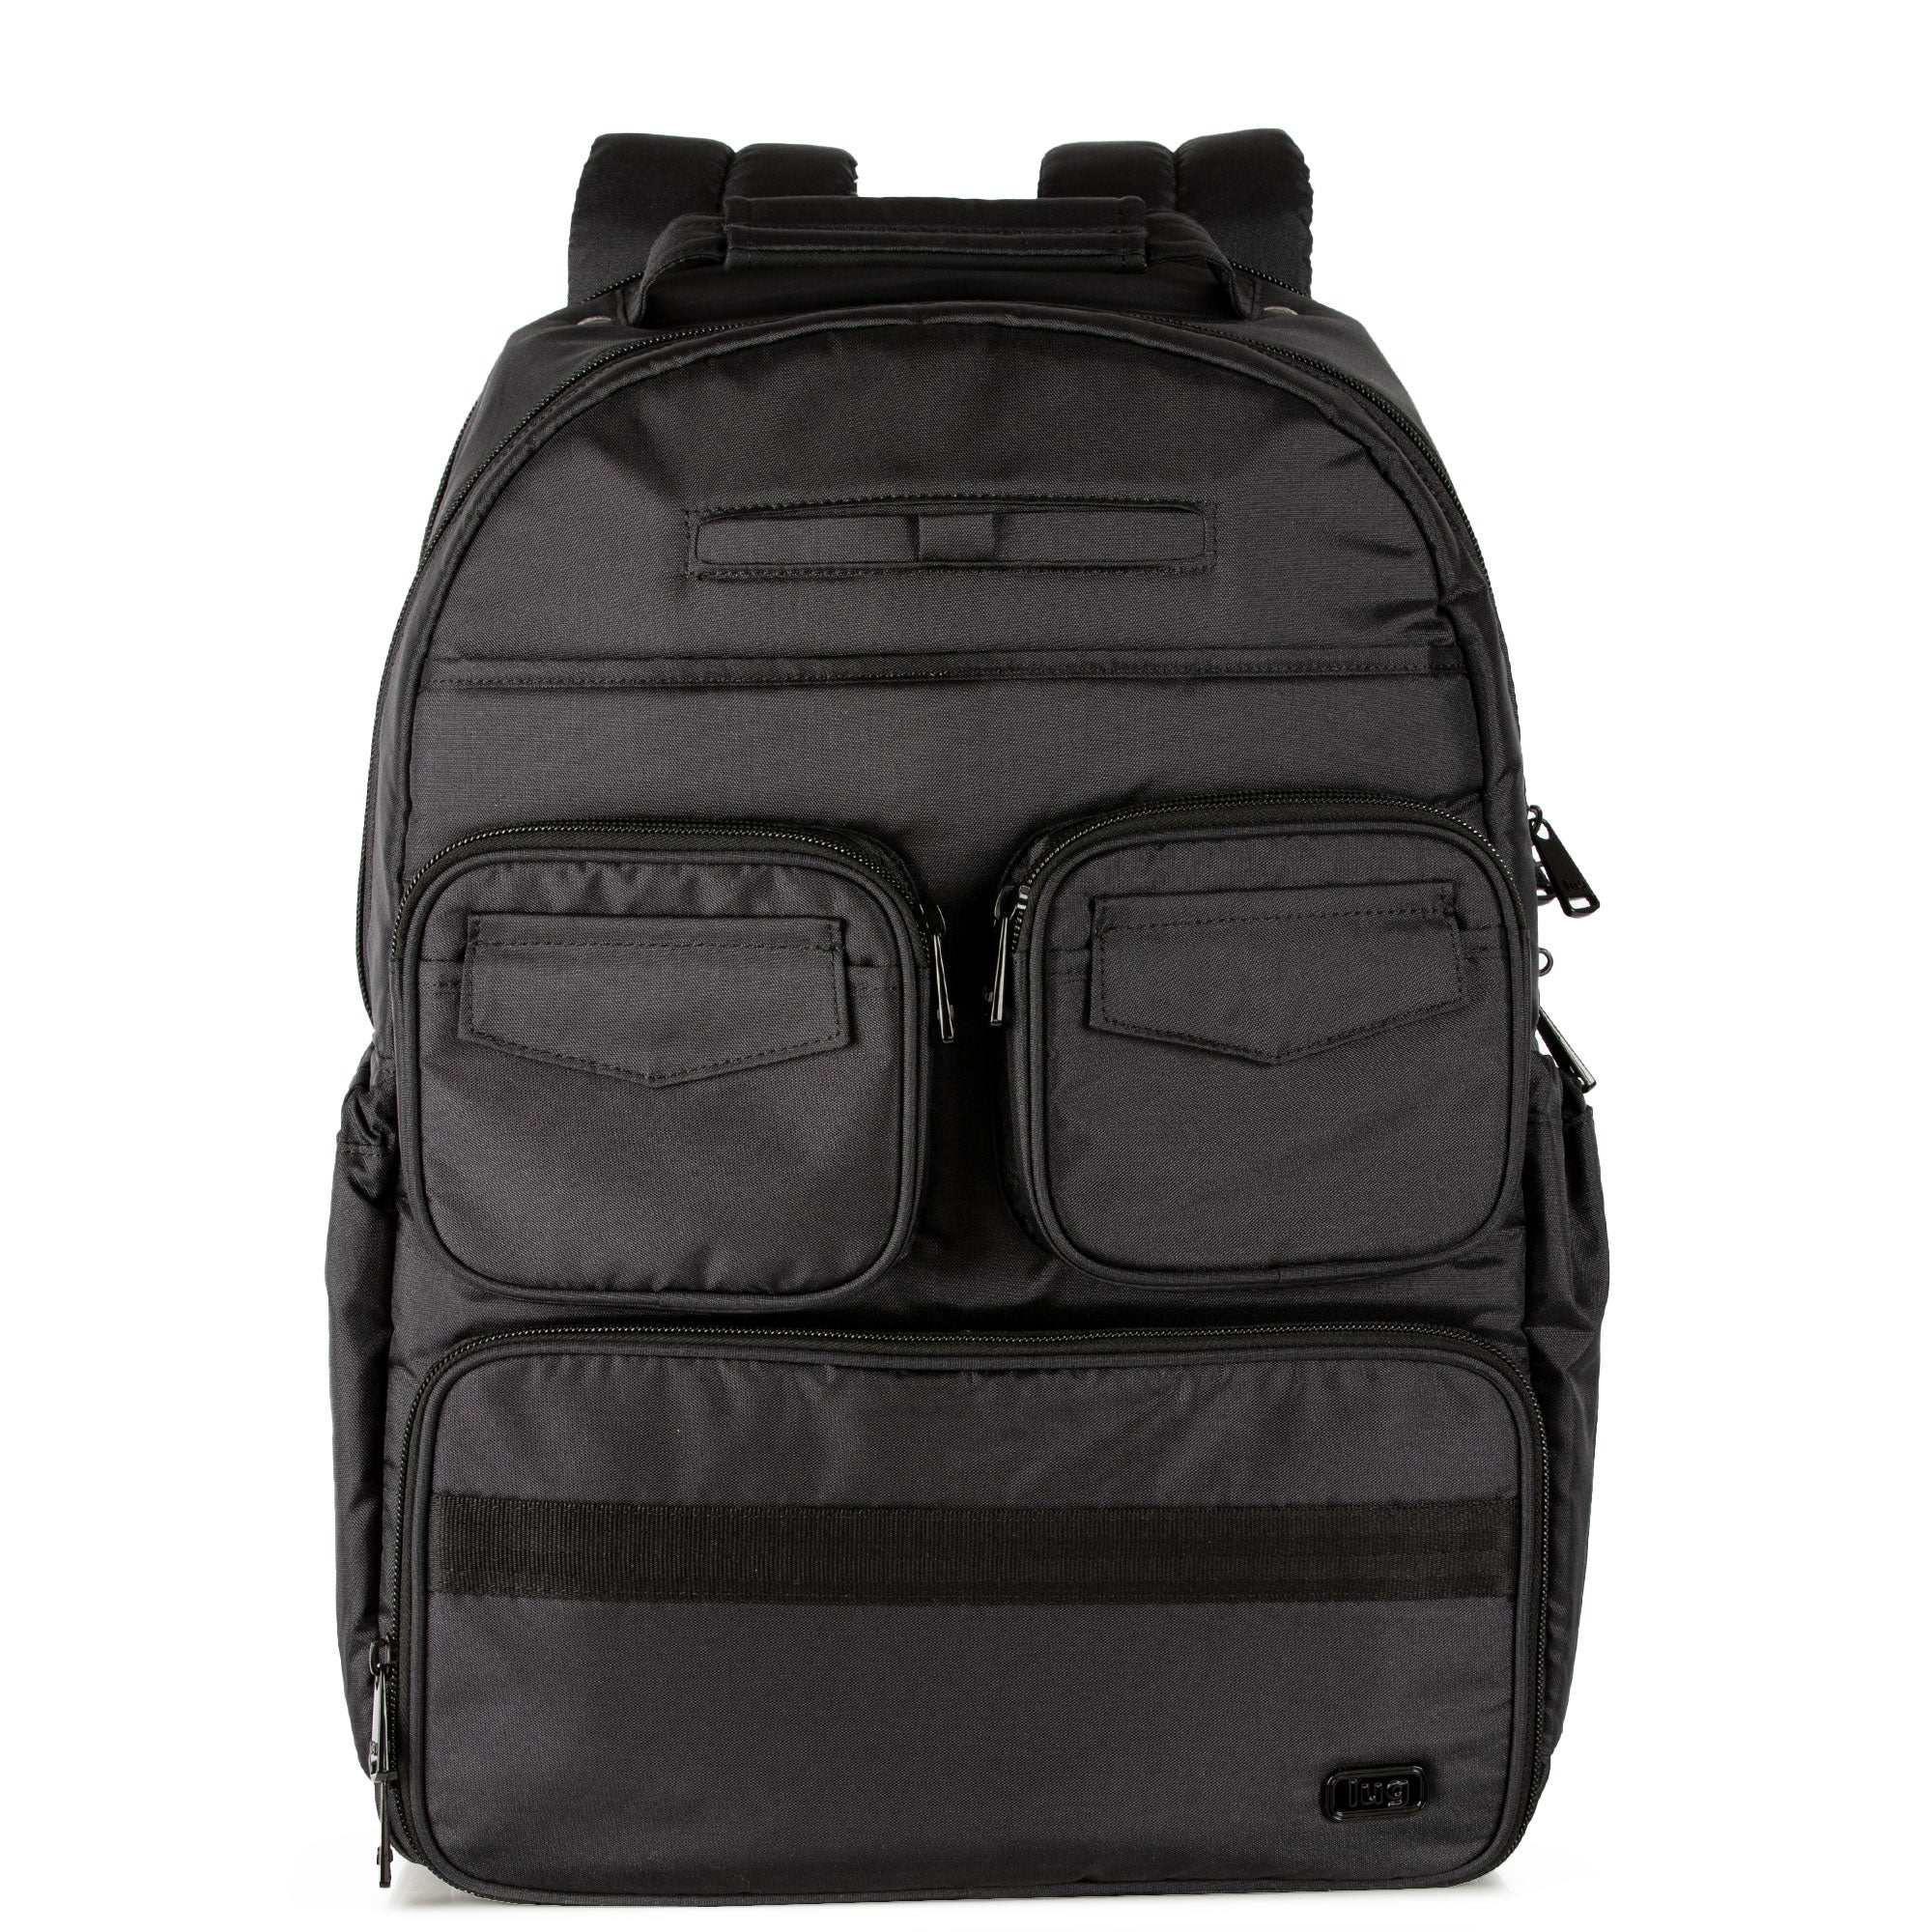 Puddle Jumper Backpack SE - Luglife.com